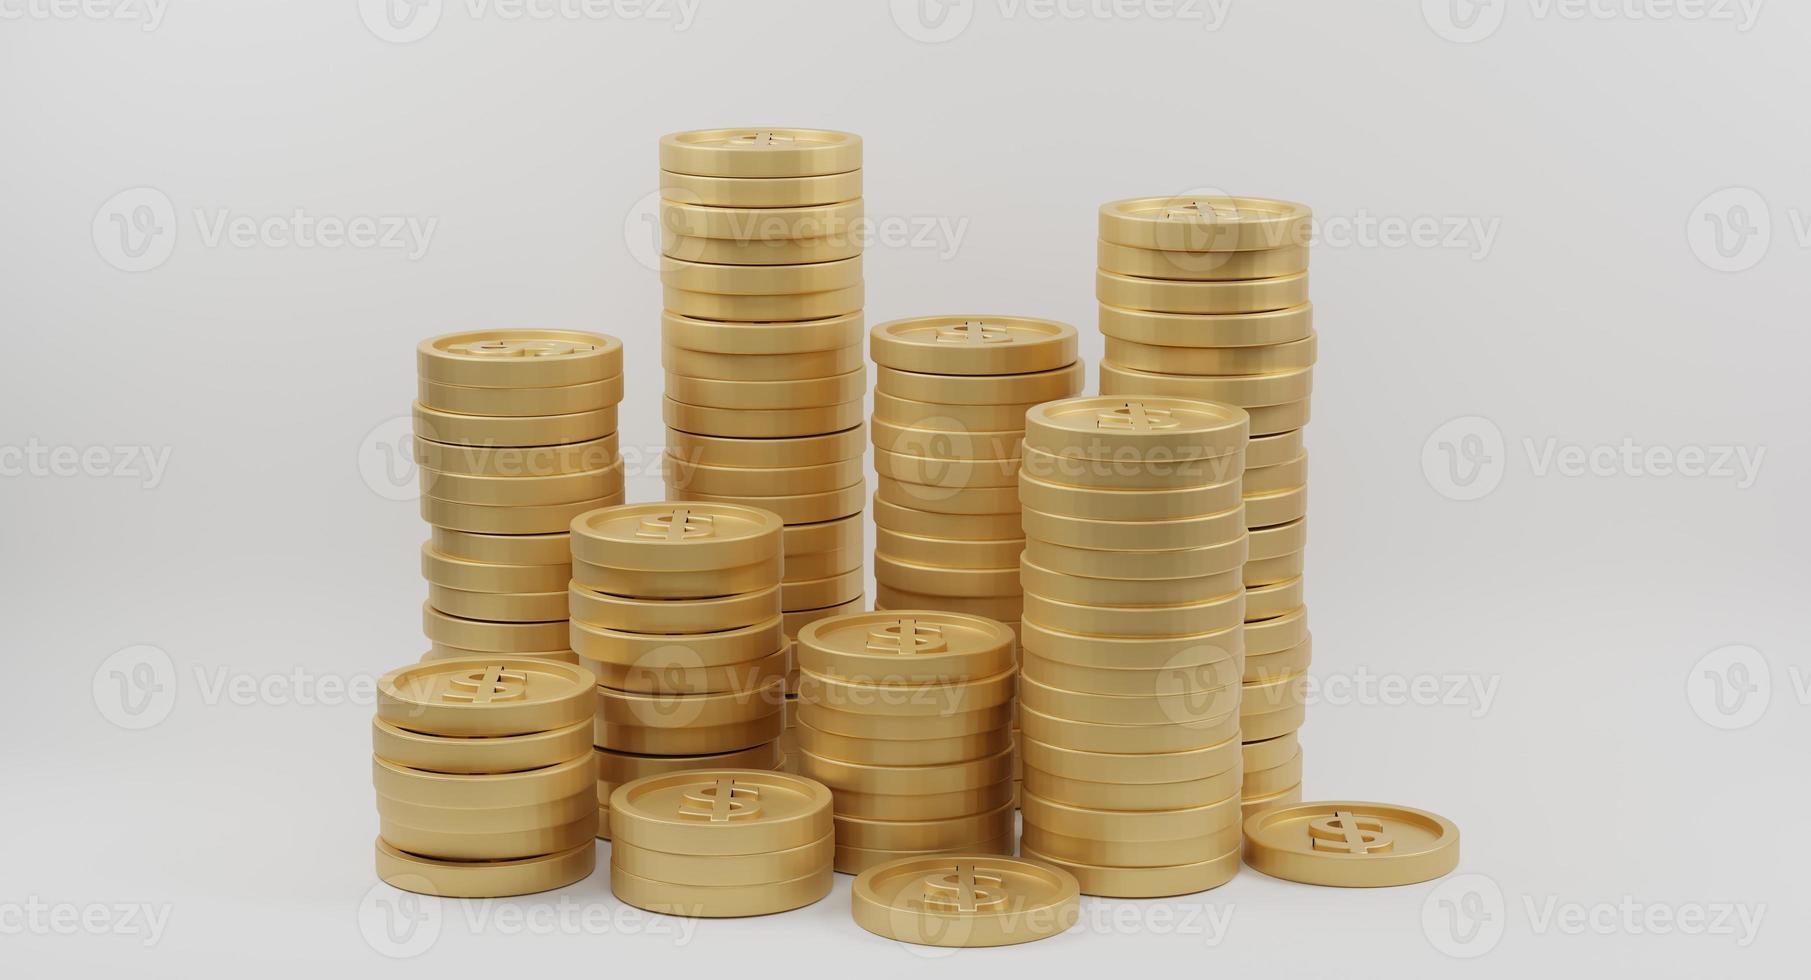 pilas de monedas de oro con signo de dólar sobre fondo blanco. concepto de banca y finanzas. representación 3d foto